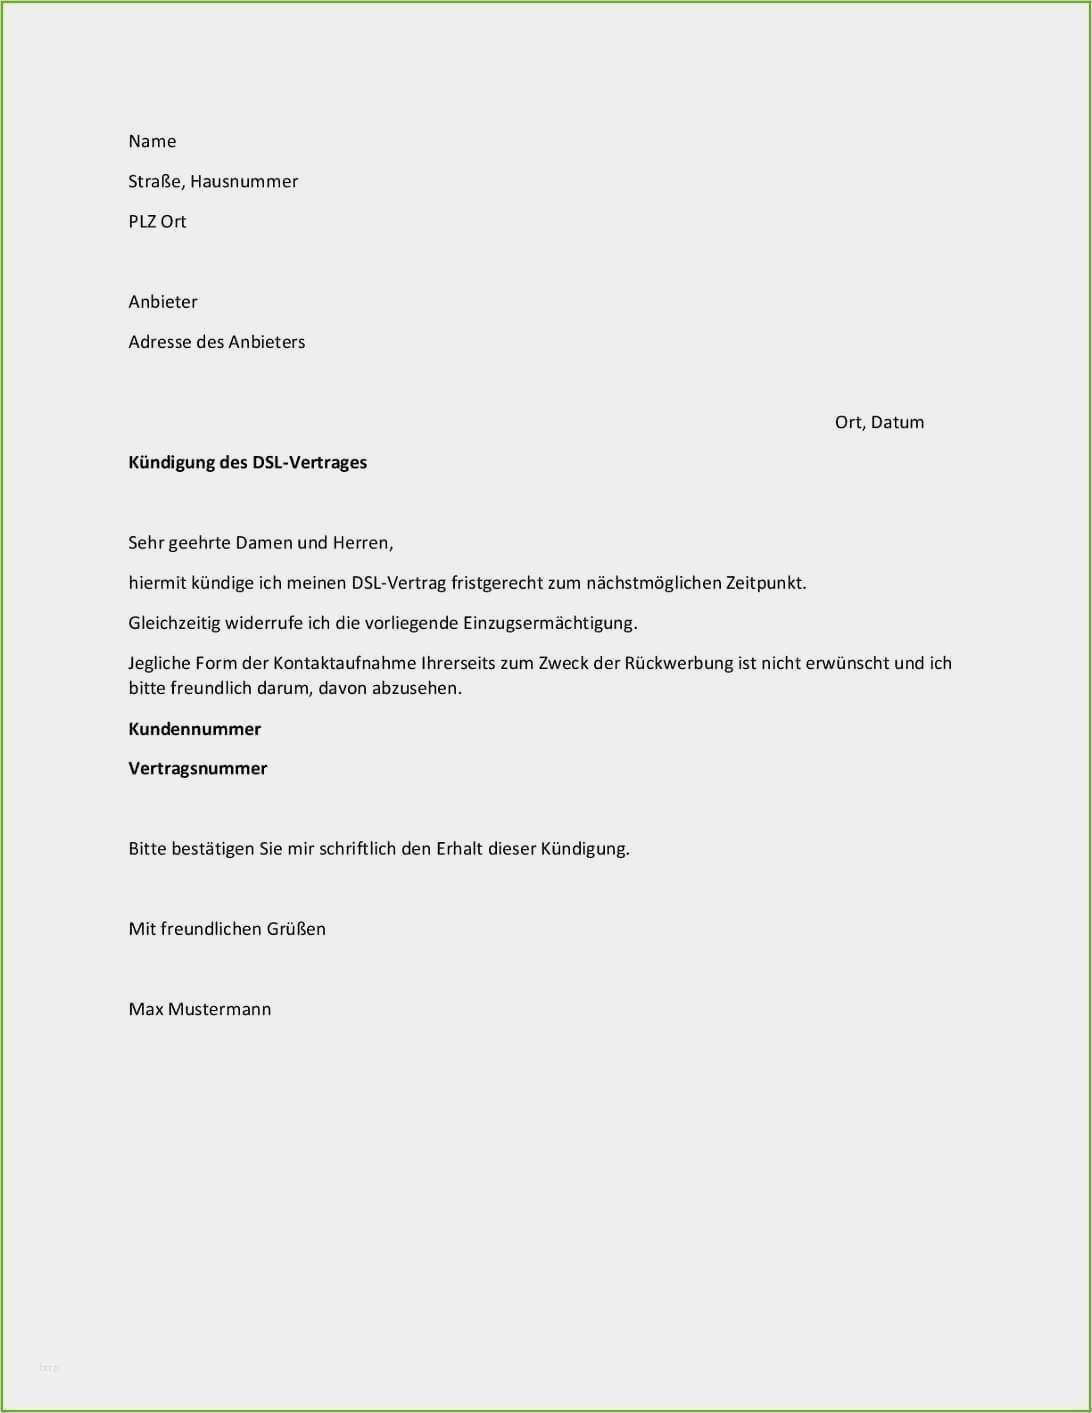 36 Wunderbar Telekom Kundigung Vorlage Handy Foto Vorlagen Vertrag Kundigen Microsoft Word